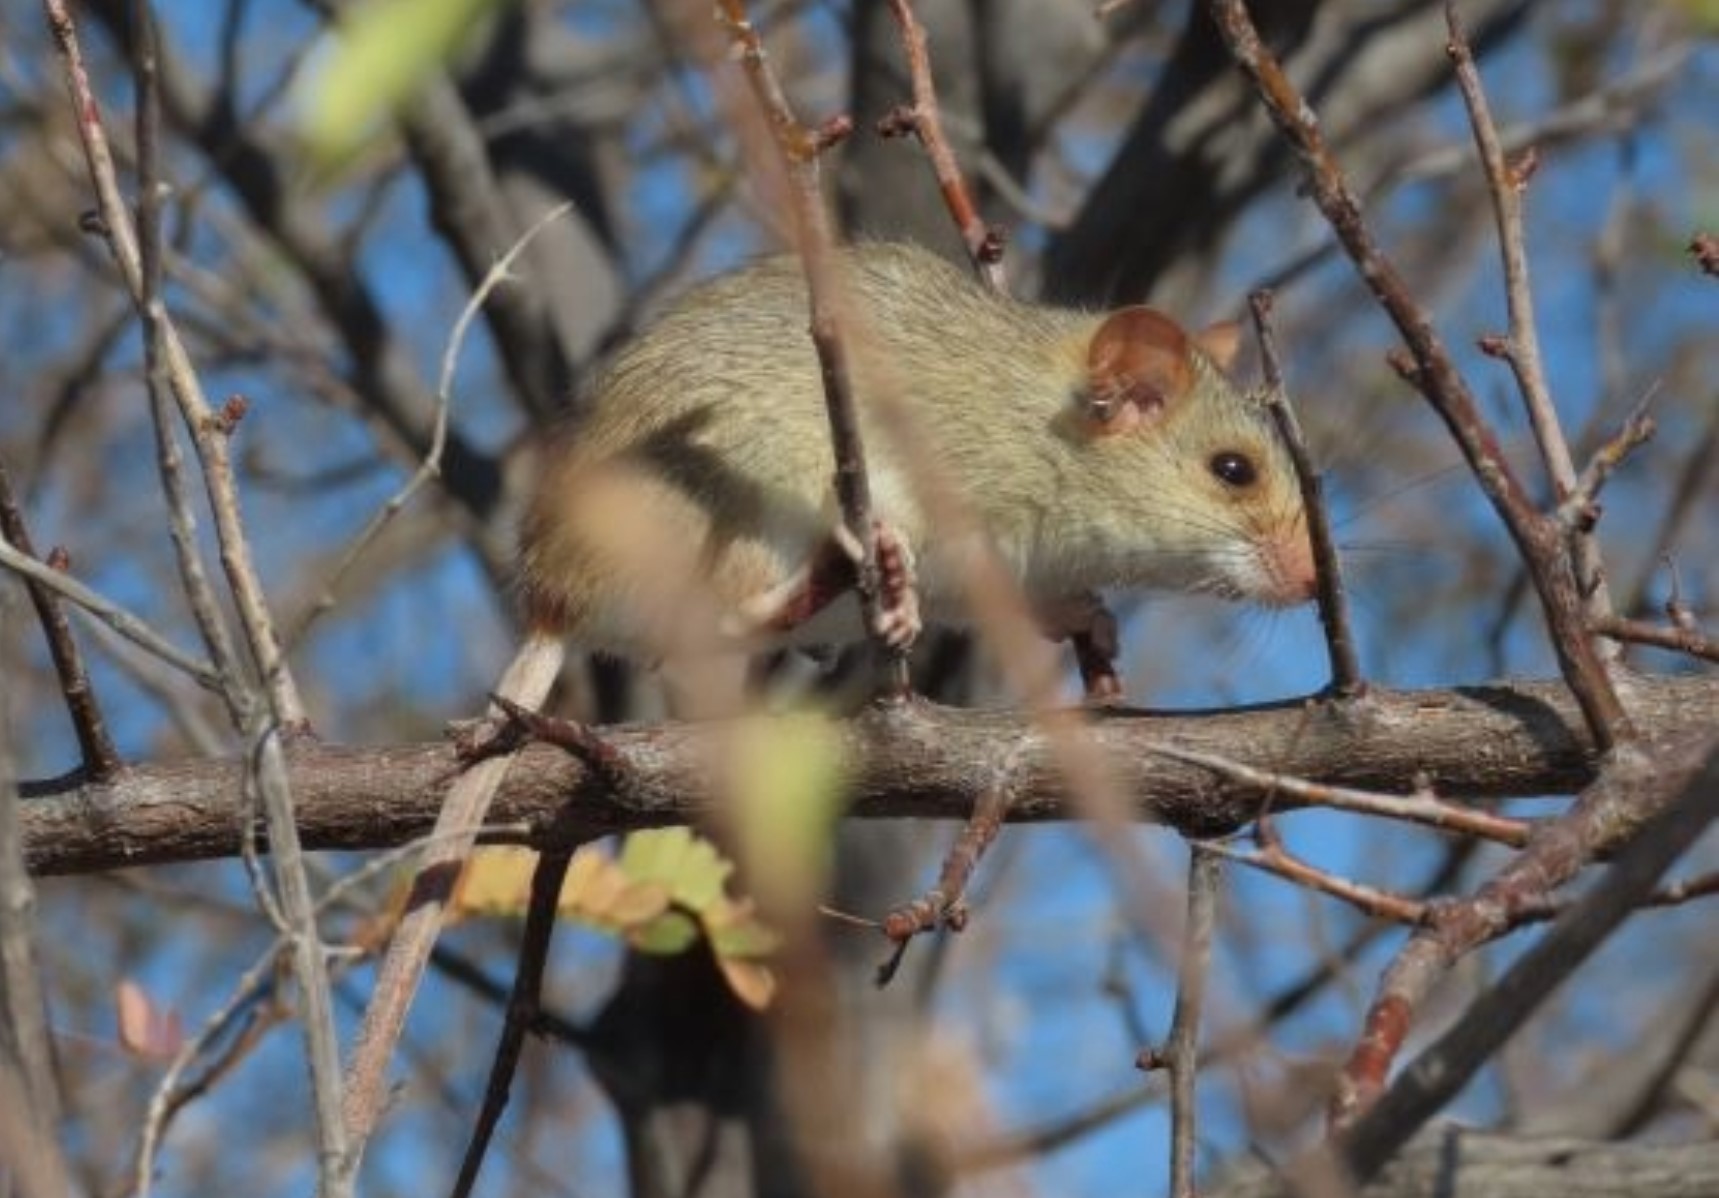 Rato-bico-de-lacre (Wiedomys pyrrhorhinos) faz parte dos 54% de pequenos mamíferos que serão mais prejudicadas com mudanças climáticas na Caatinga (Foto: Sarah Mângia / UFMS) 